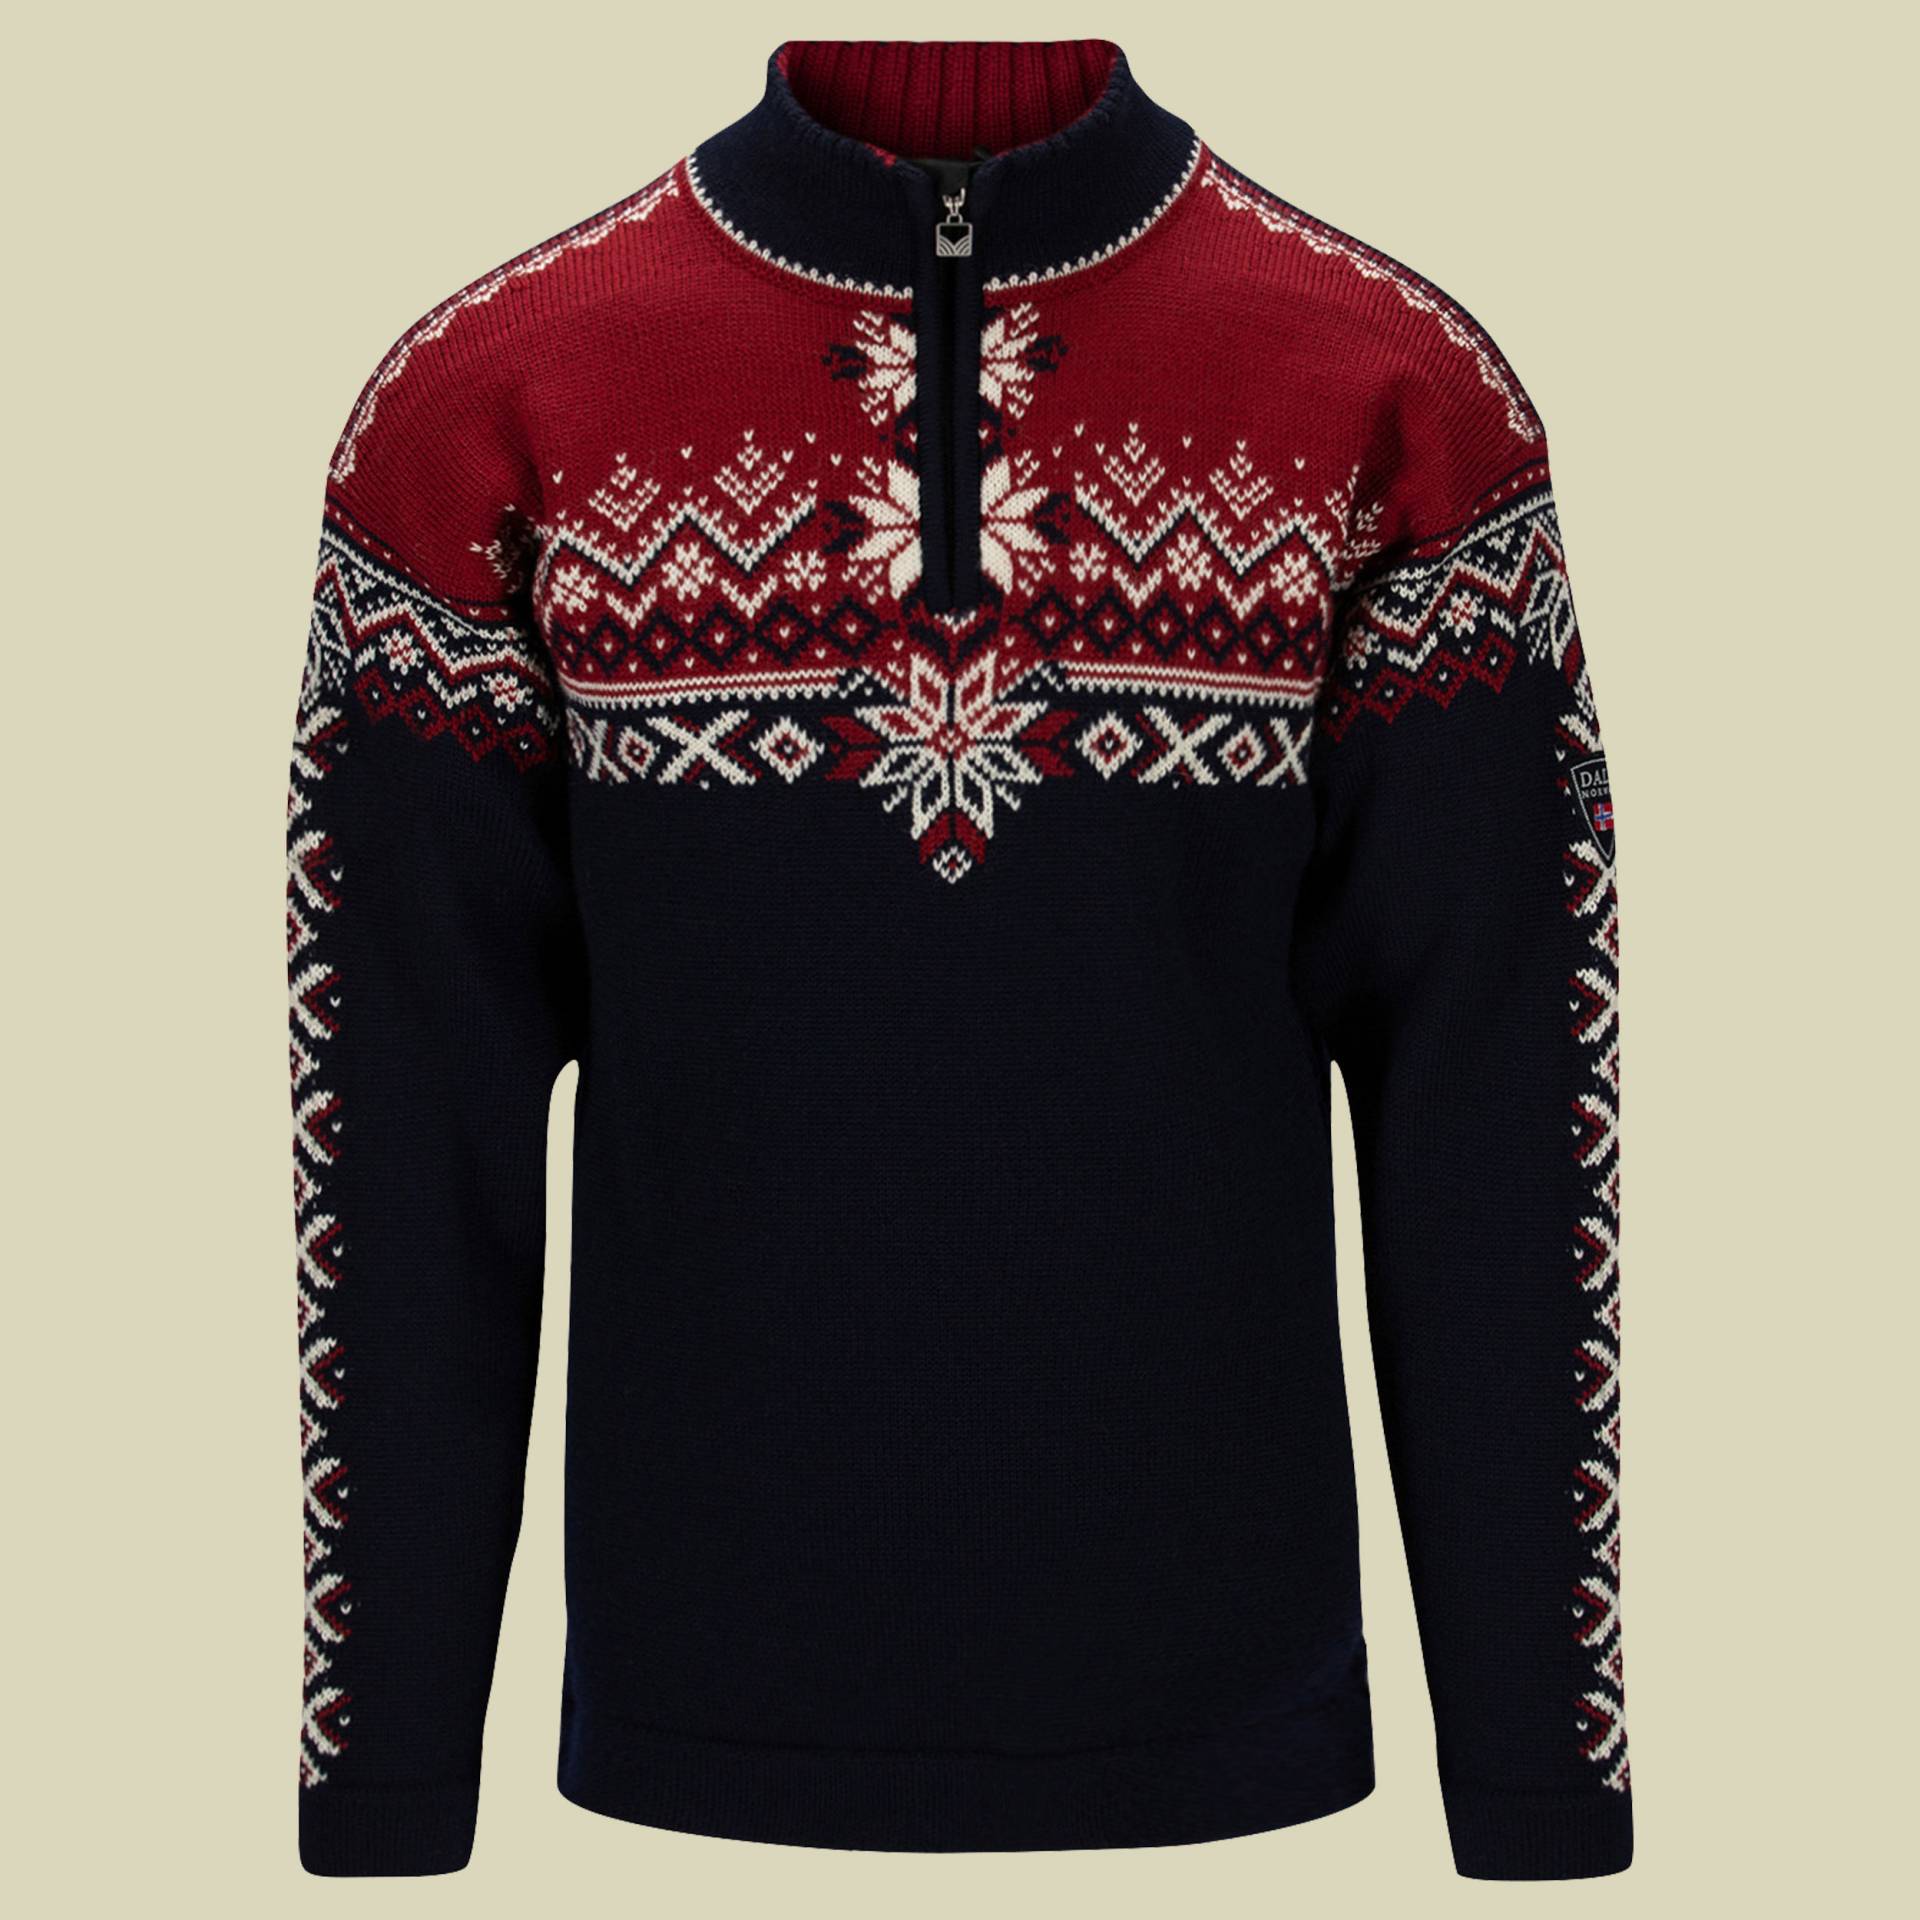 140th Anniversary Sweater Men mehrfarbig 3 Größe XXL Farbe navy/red rose/off white von Dale of Norway